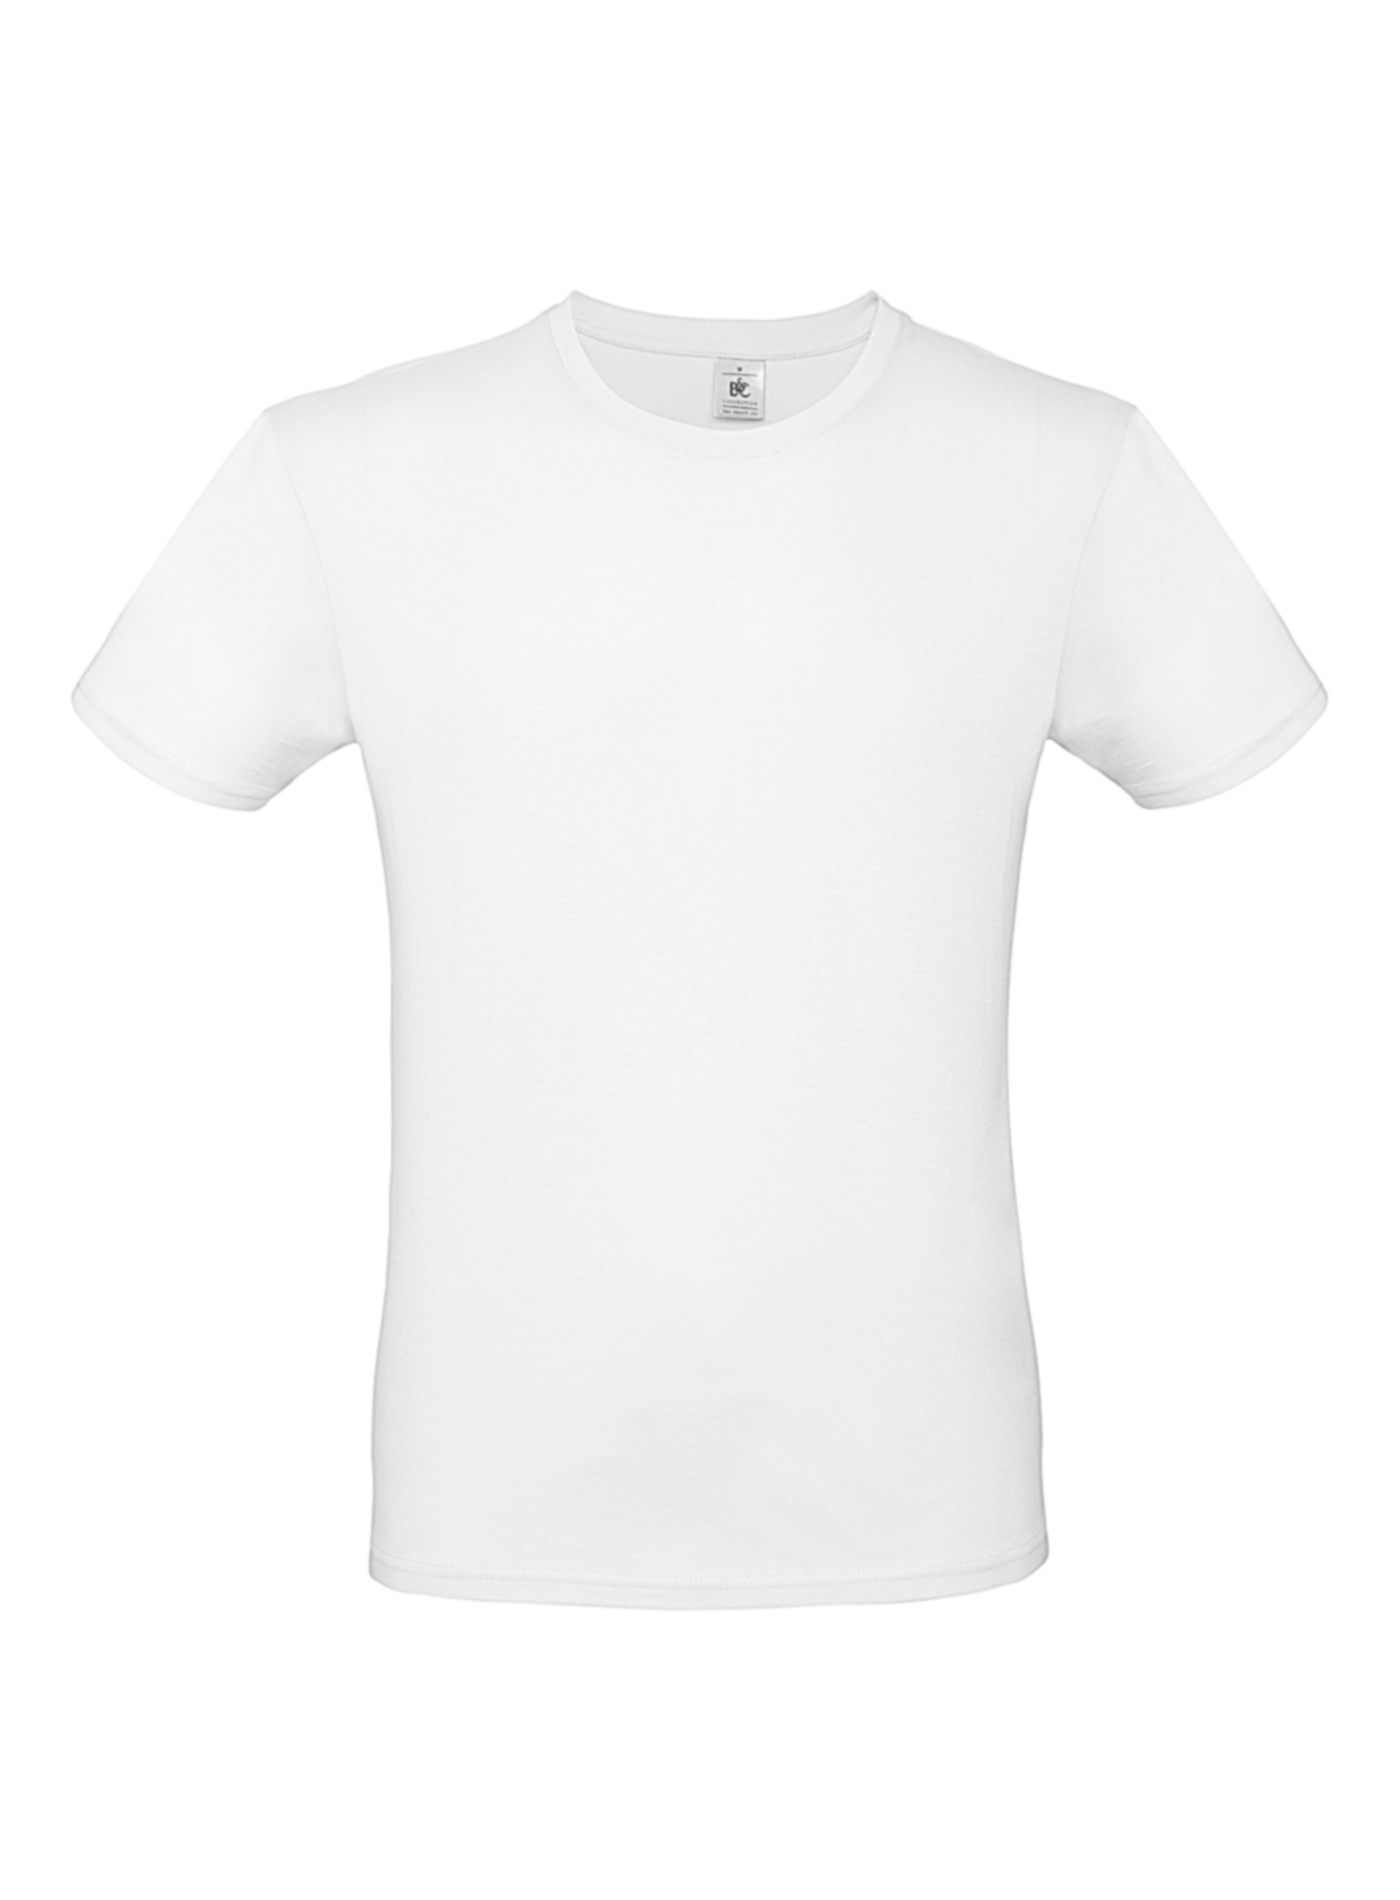 Pánské tričko B&C - Bílá 4XL